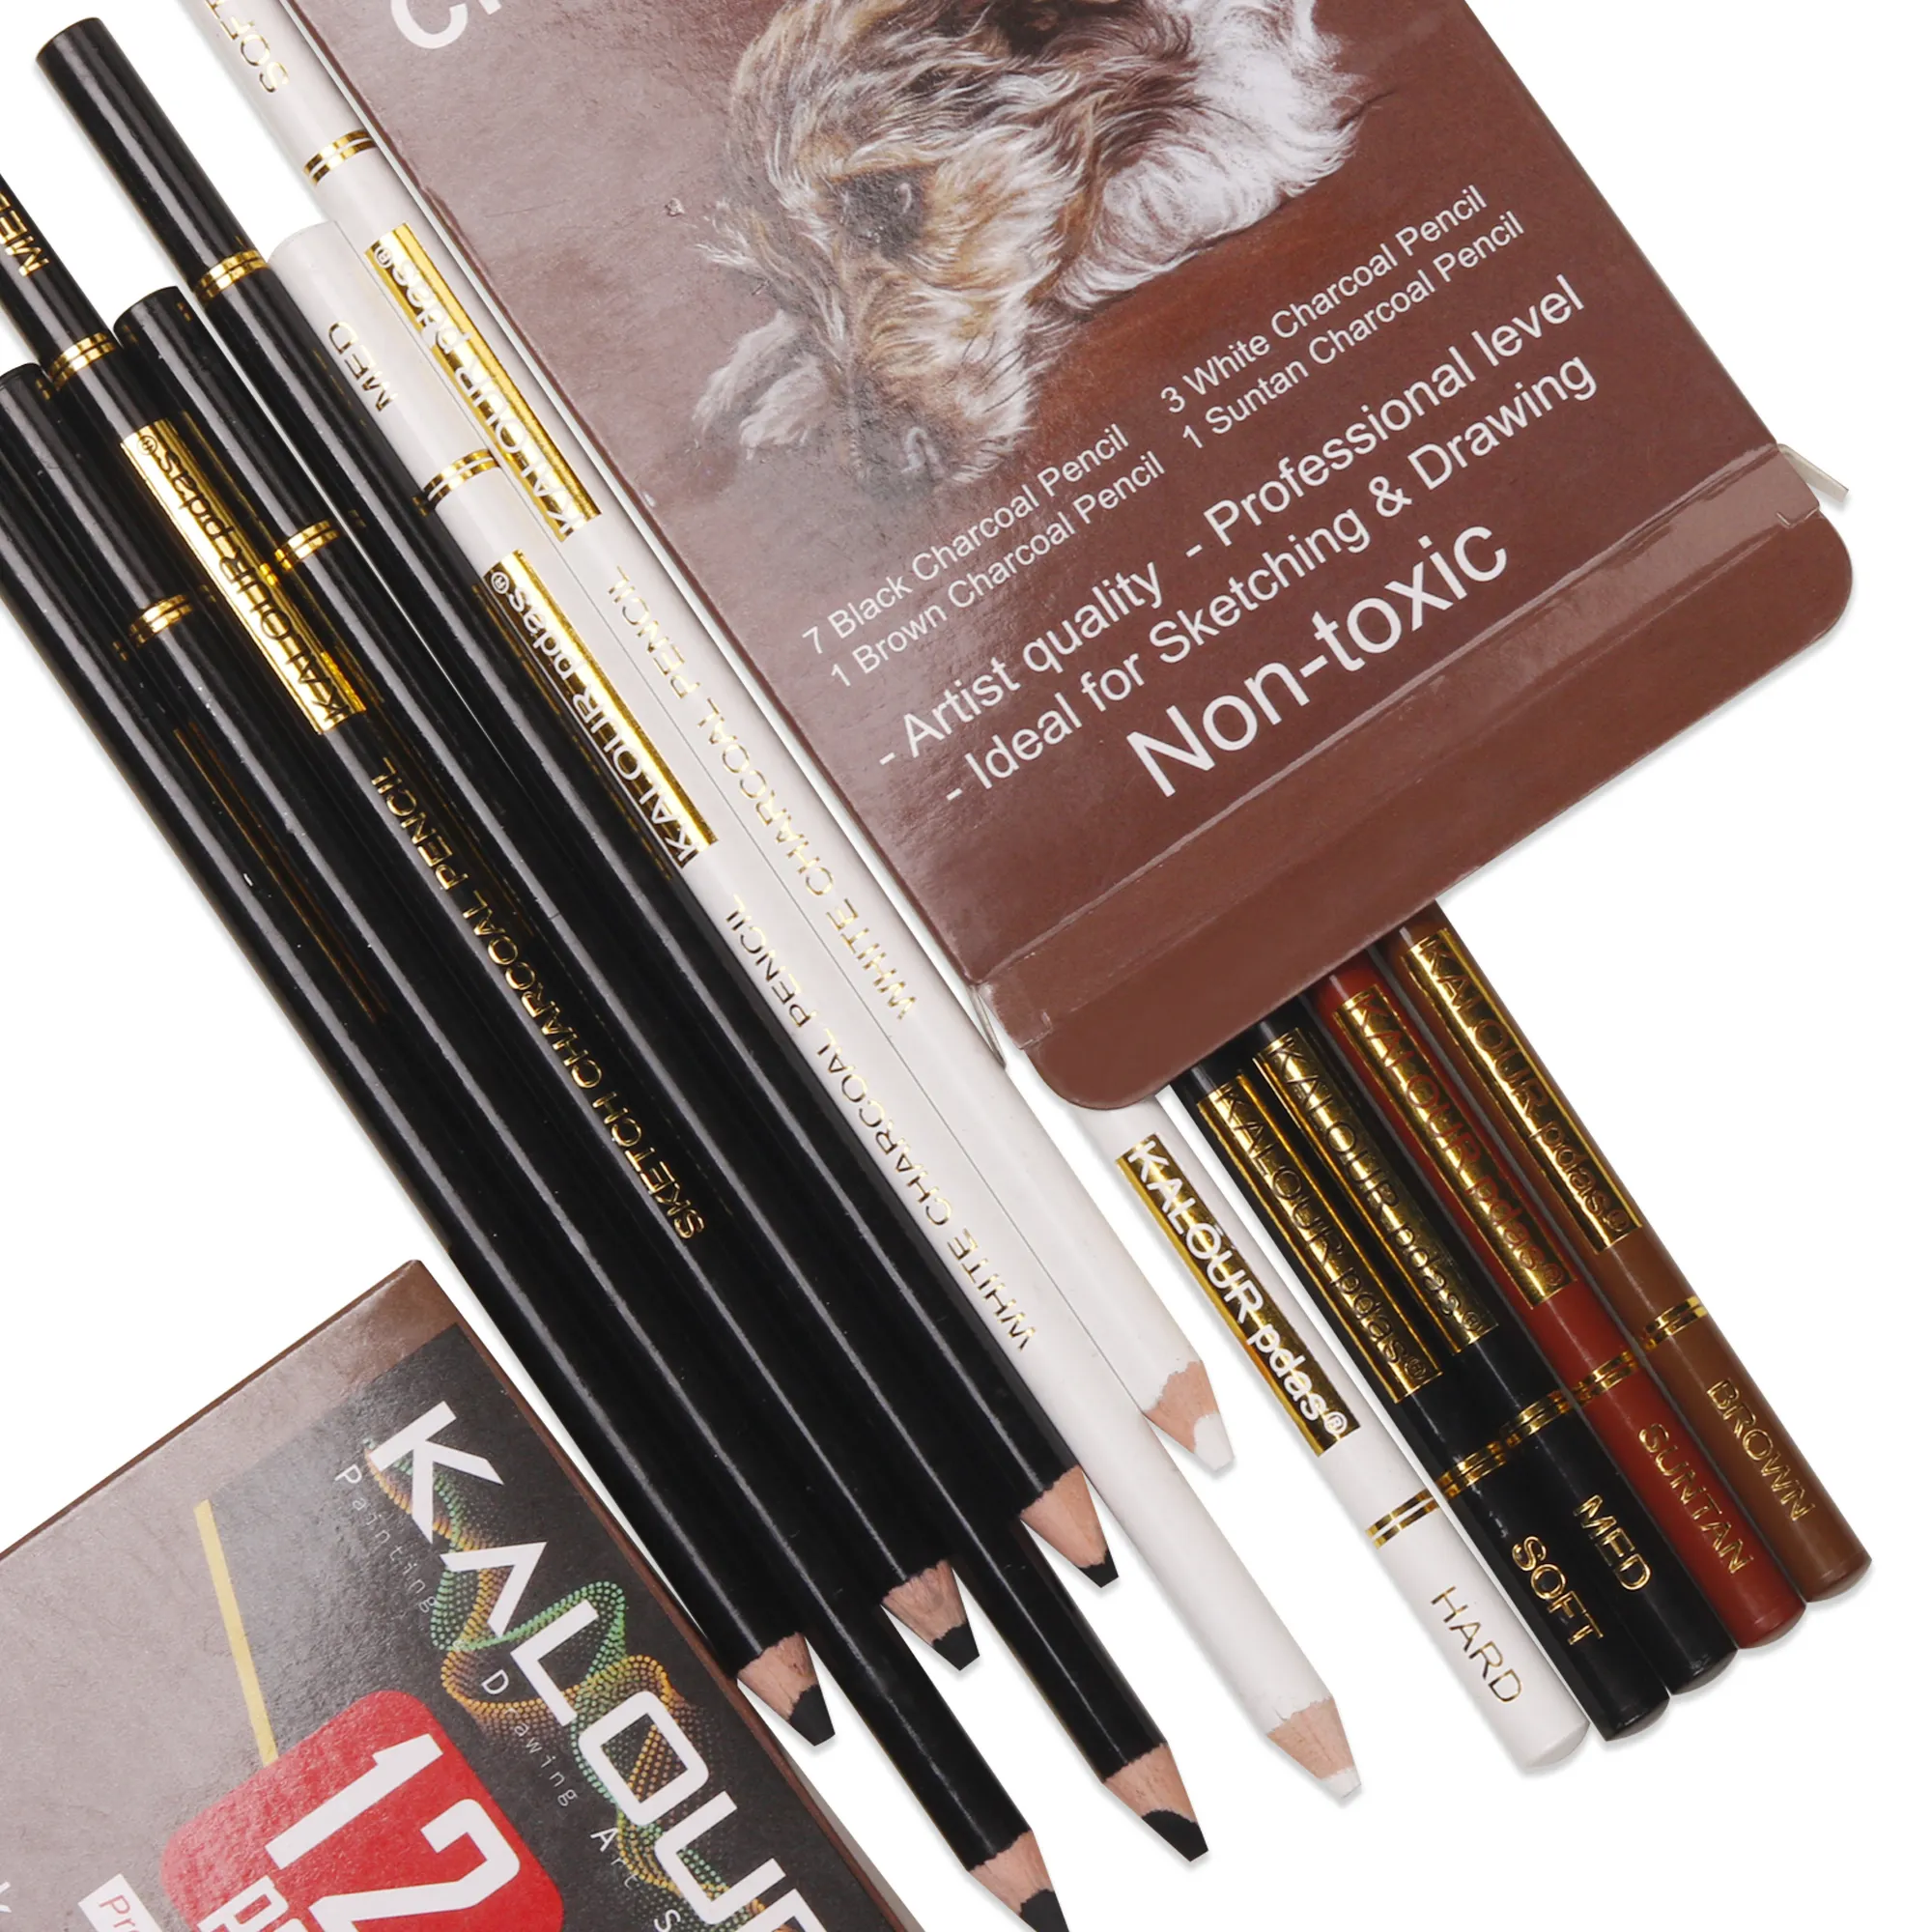 कला आपूर्ति के रूप में स्केचिंग और ड्राइंग पेंसिल सेट के लिए पेपर बॉक्स में KALOUR 12 काले मिश्रित सफेद काले रंग की चारकोल पेंसिल